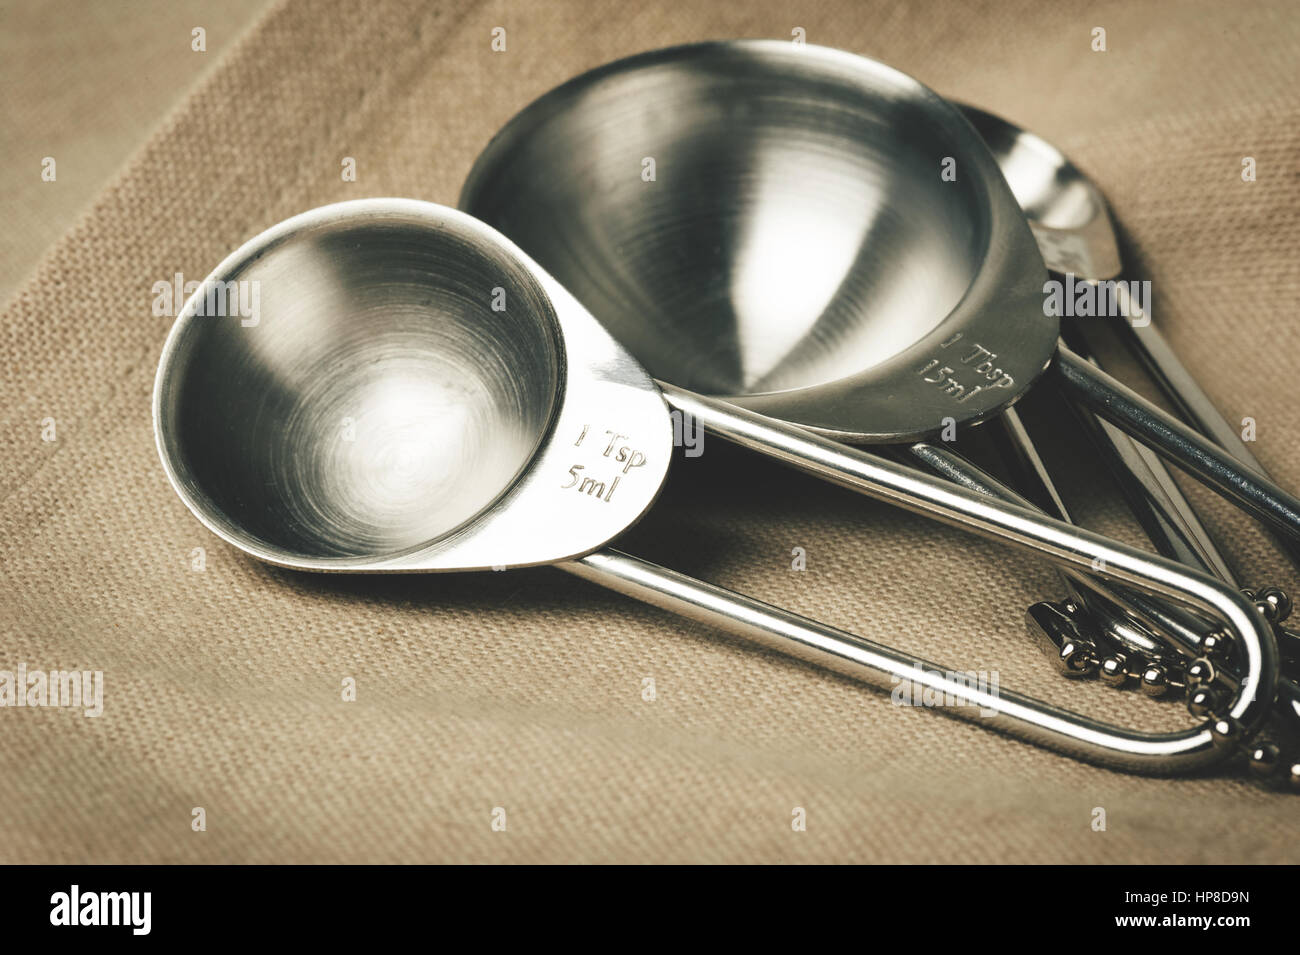 https://c8.alamy.com/comp/HP8D9N/set-of-stainless-steel-measuring-spoons-in-varying-sizes-HP8D9N.jpg